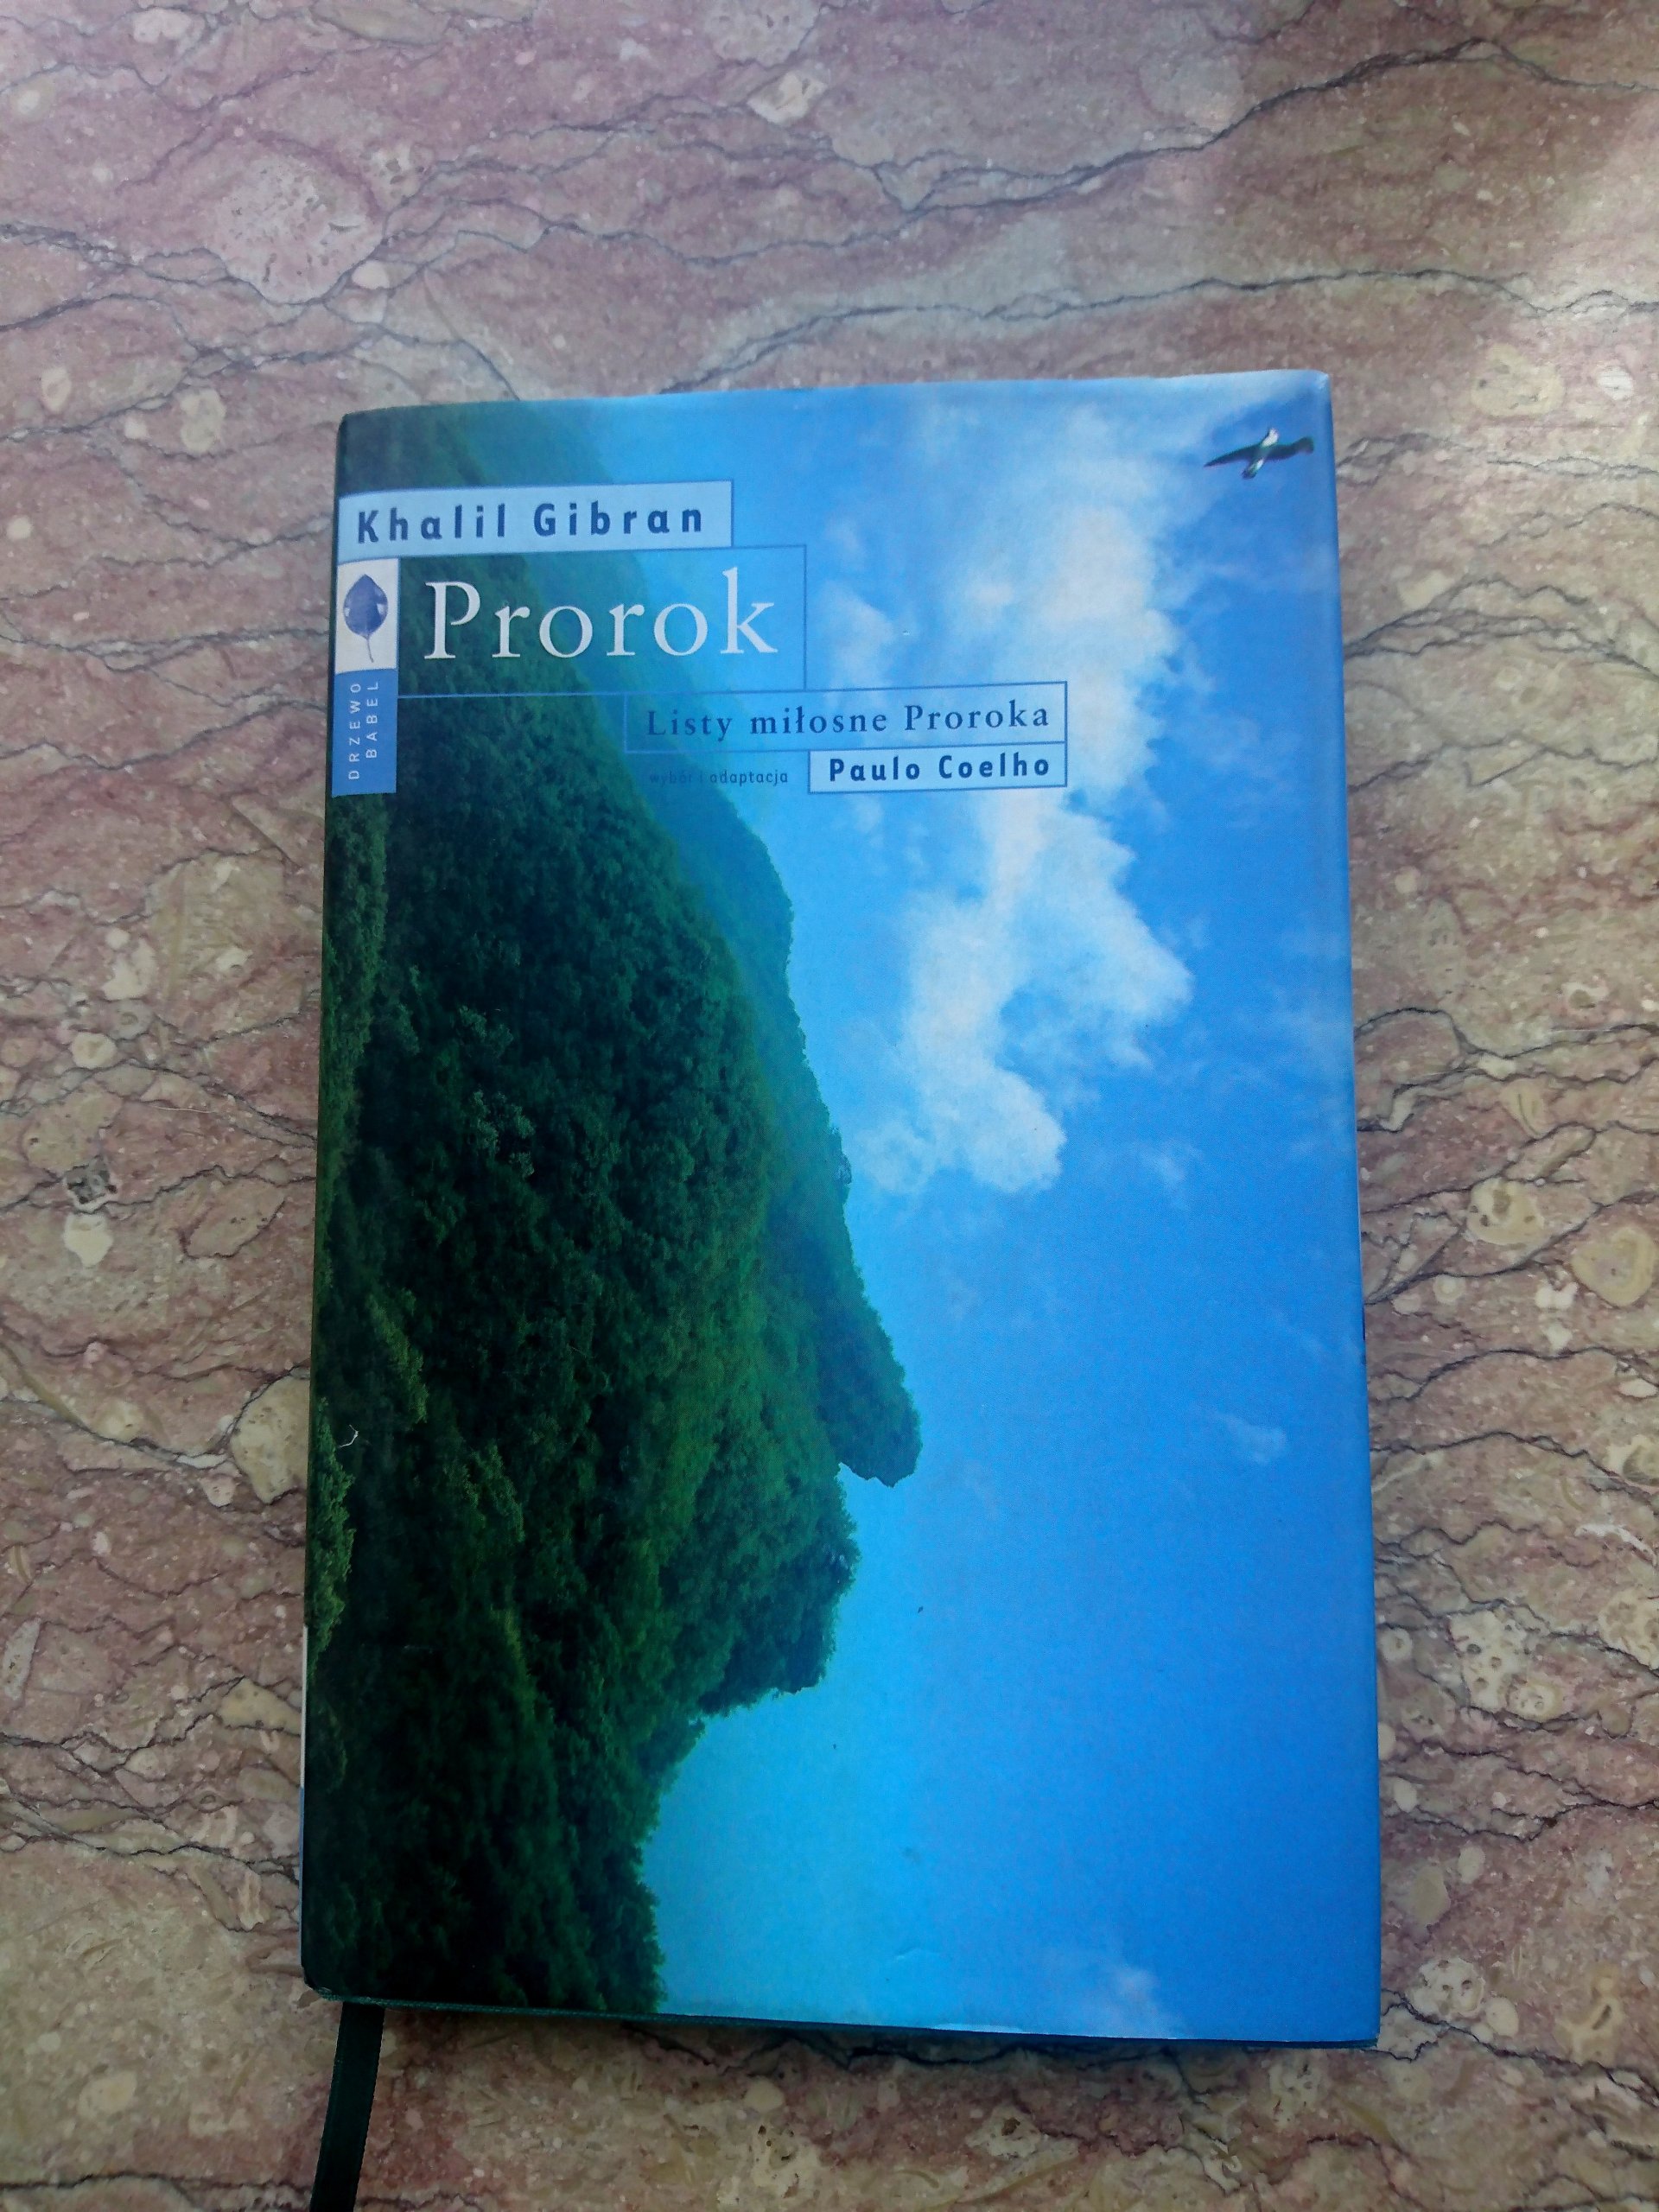 Znalezione obrazy dla zapytania Prorok. Listy miÅ‚osne Proroka Autorzy: Paulo Coelho, Khalil Gibran